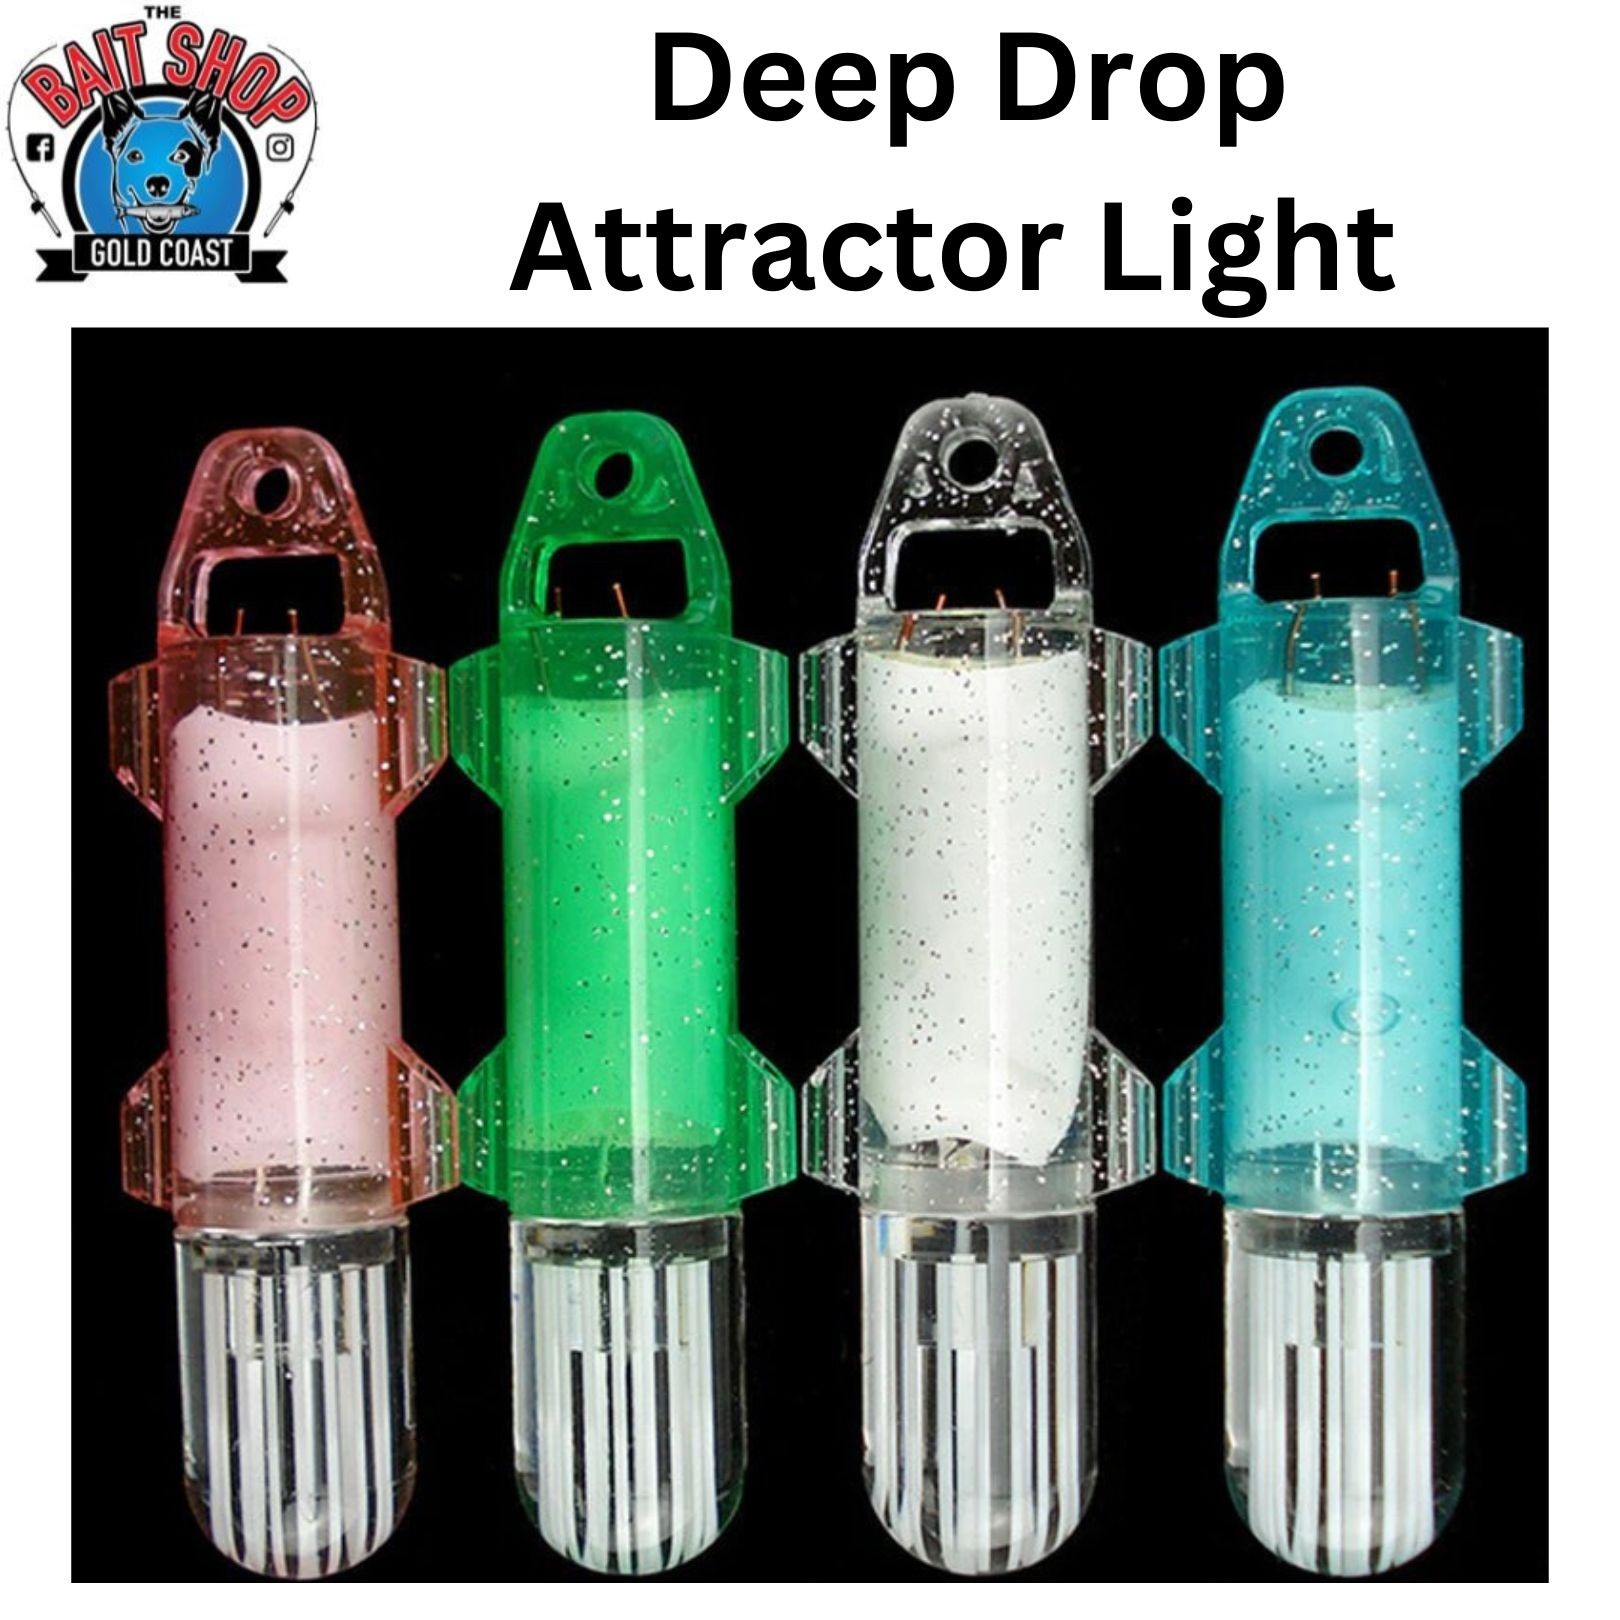 The Bait Shop Deep Drop Fish Attractor Light - The Bait Shop Gold